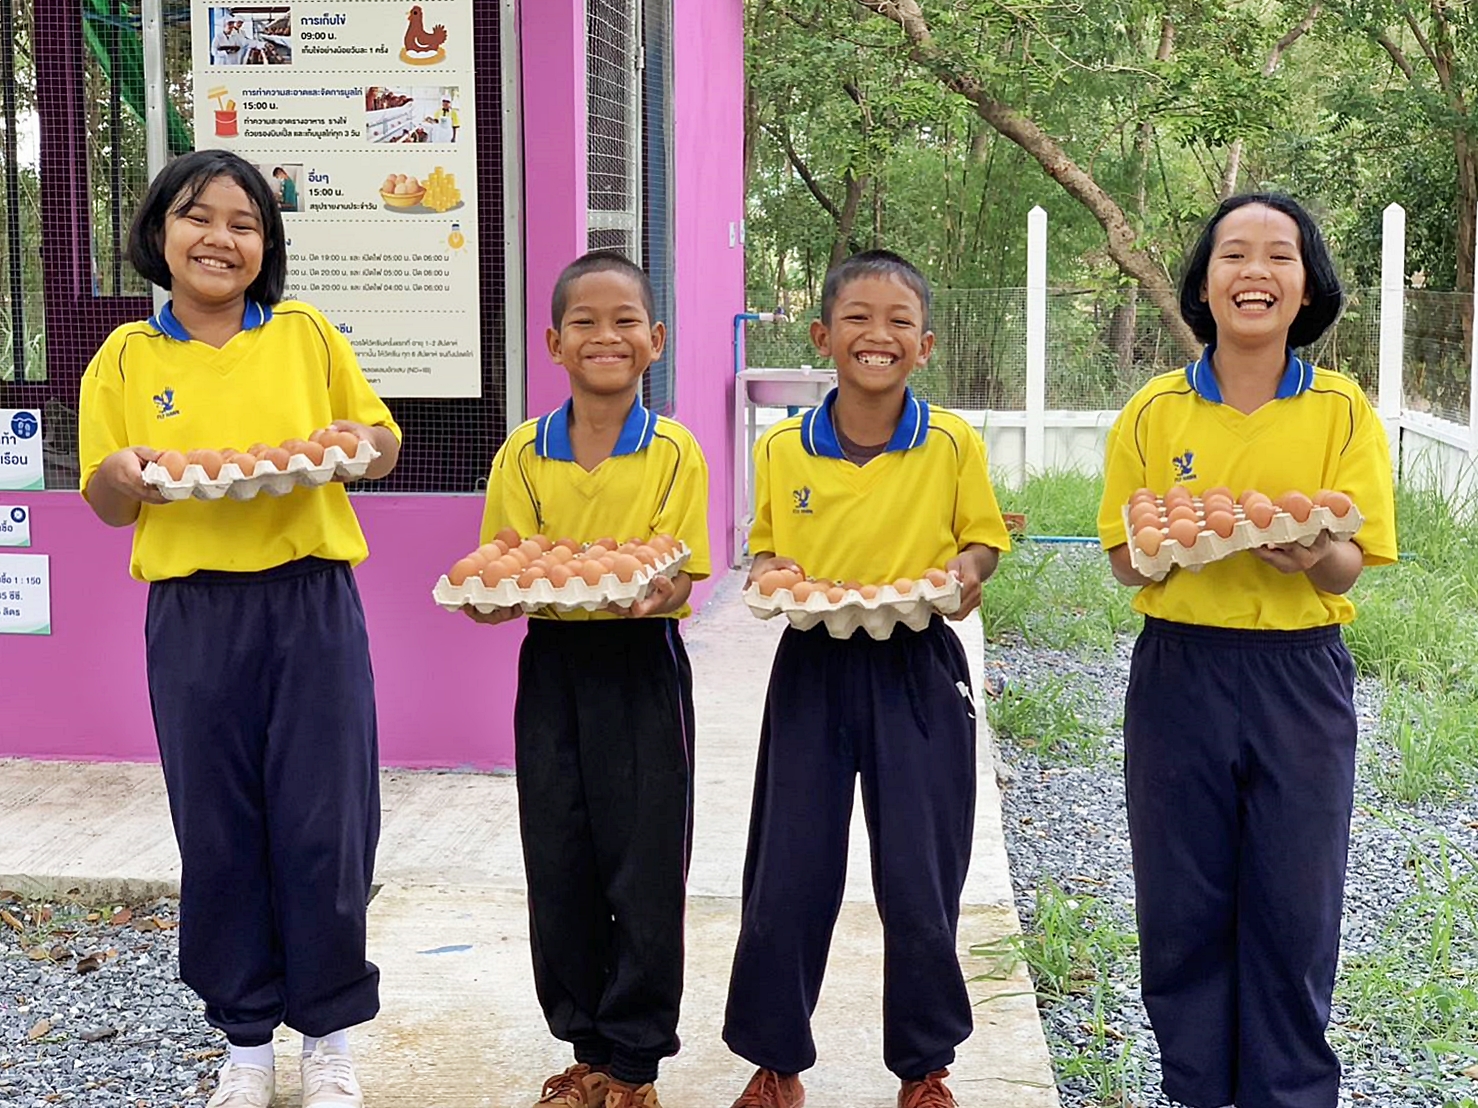 “โครงการเลี้ยงไก่ไข่เพื่ออาหารกลางวันนักเรียน” สอนทักษะอาชีพ-สร้างคลังอาหาร โรงเรียนบ้านแก้วเพชรพลอย จ.สระแก้ว